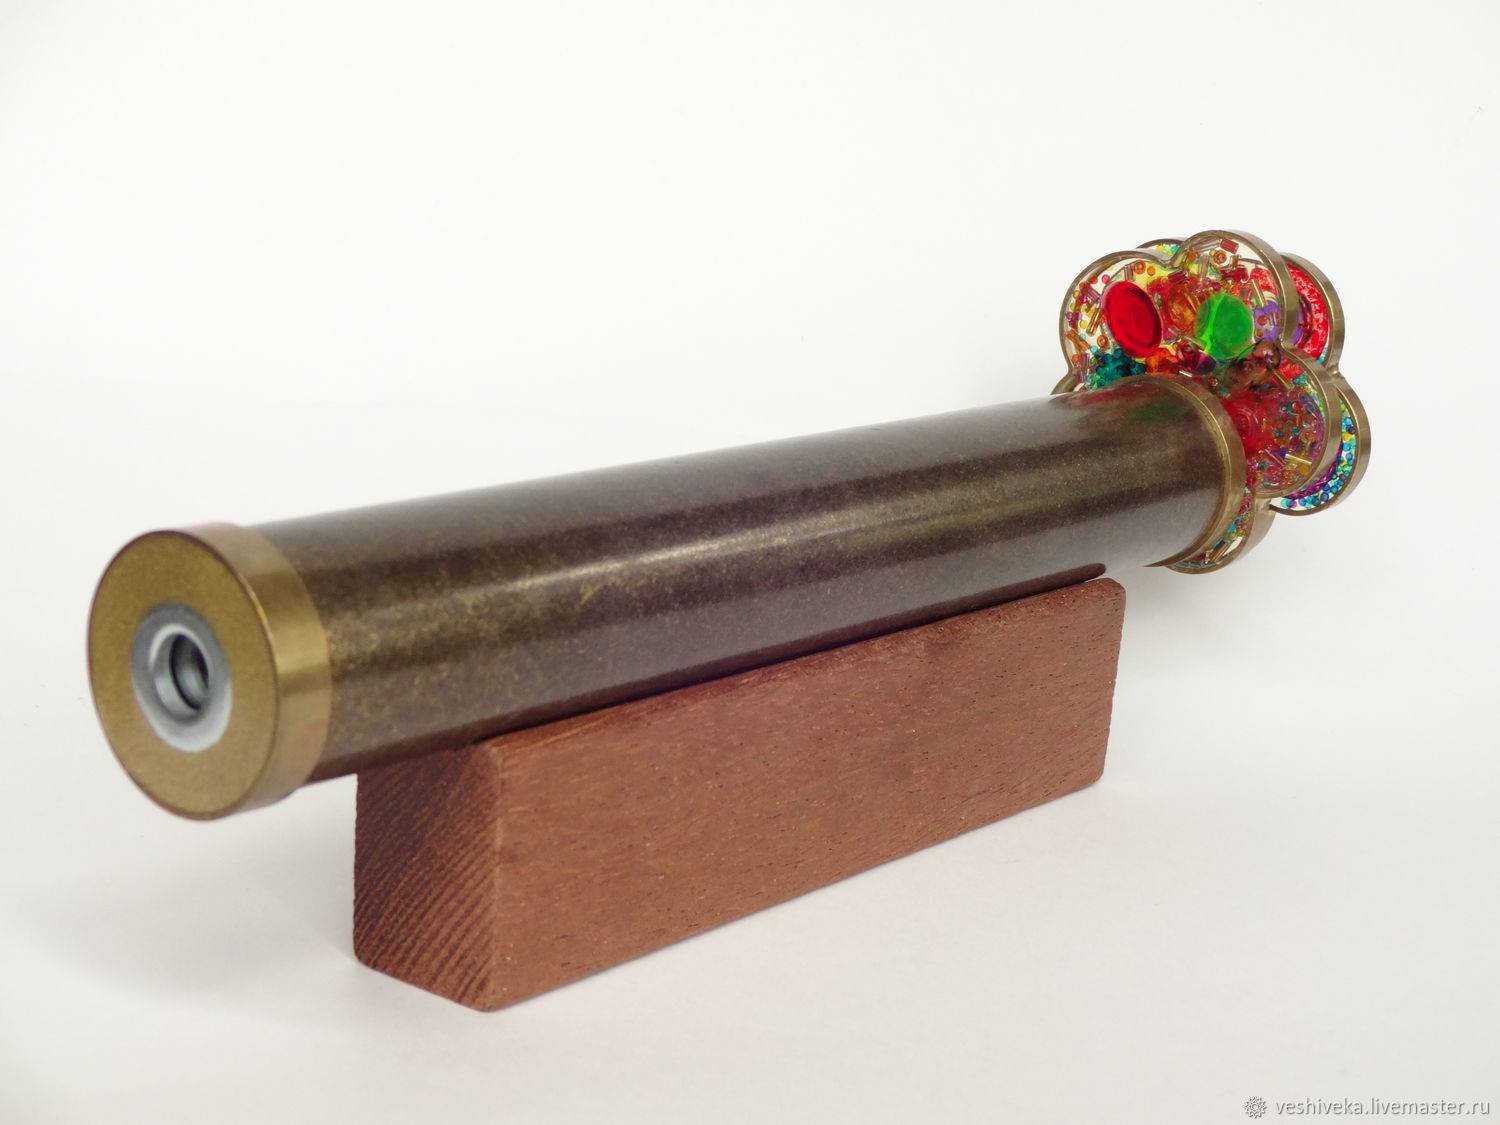 Калейдоскоп: завораживающая игрушка из советского детства